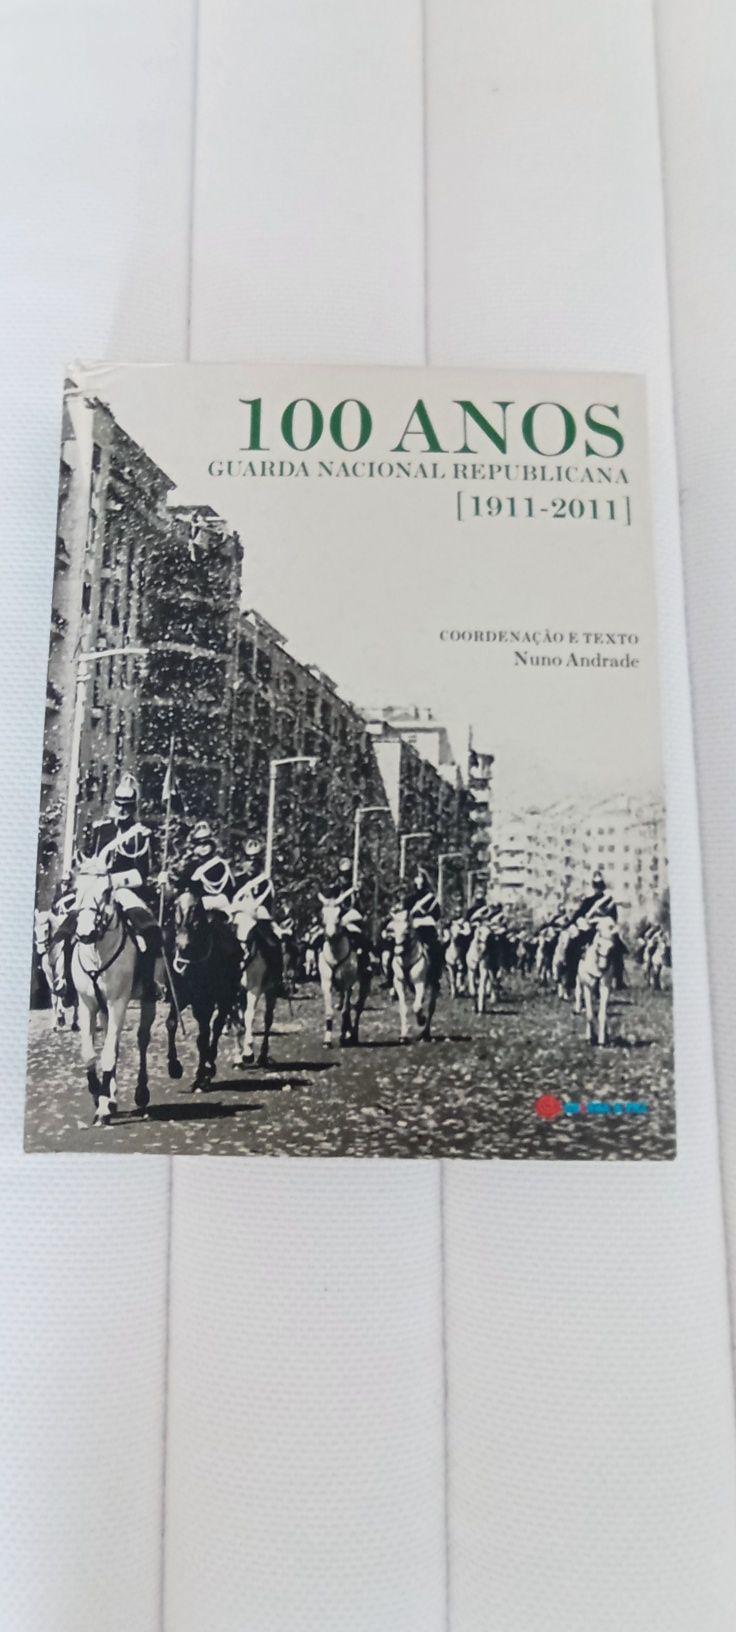 Livro dos 100 anos da GNR